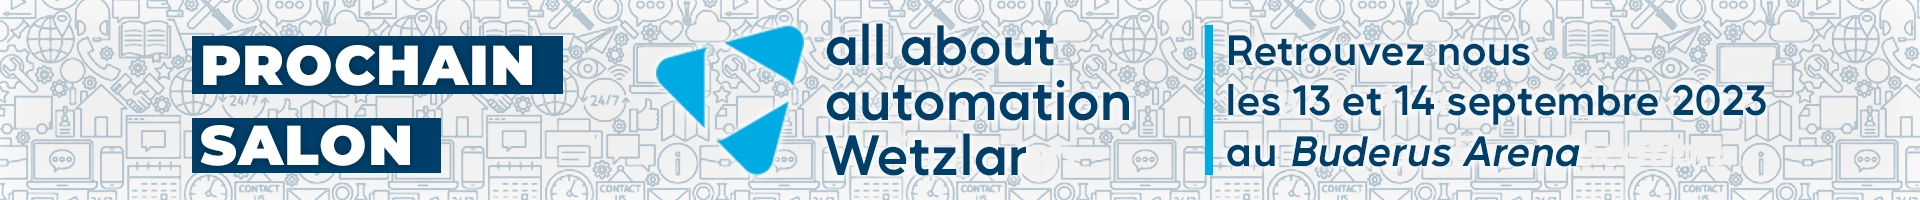 Salon All About Automation de Wetzlar 2023